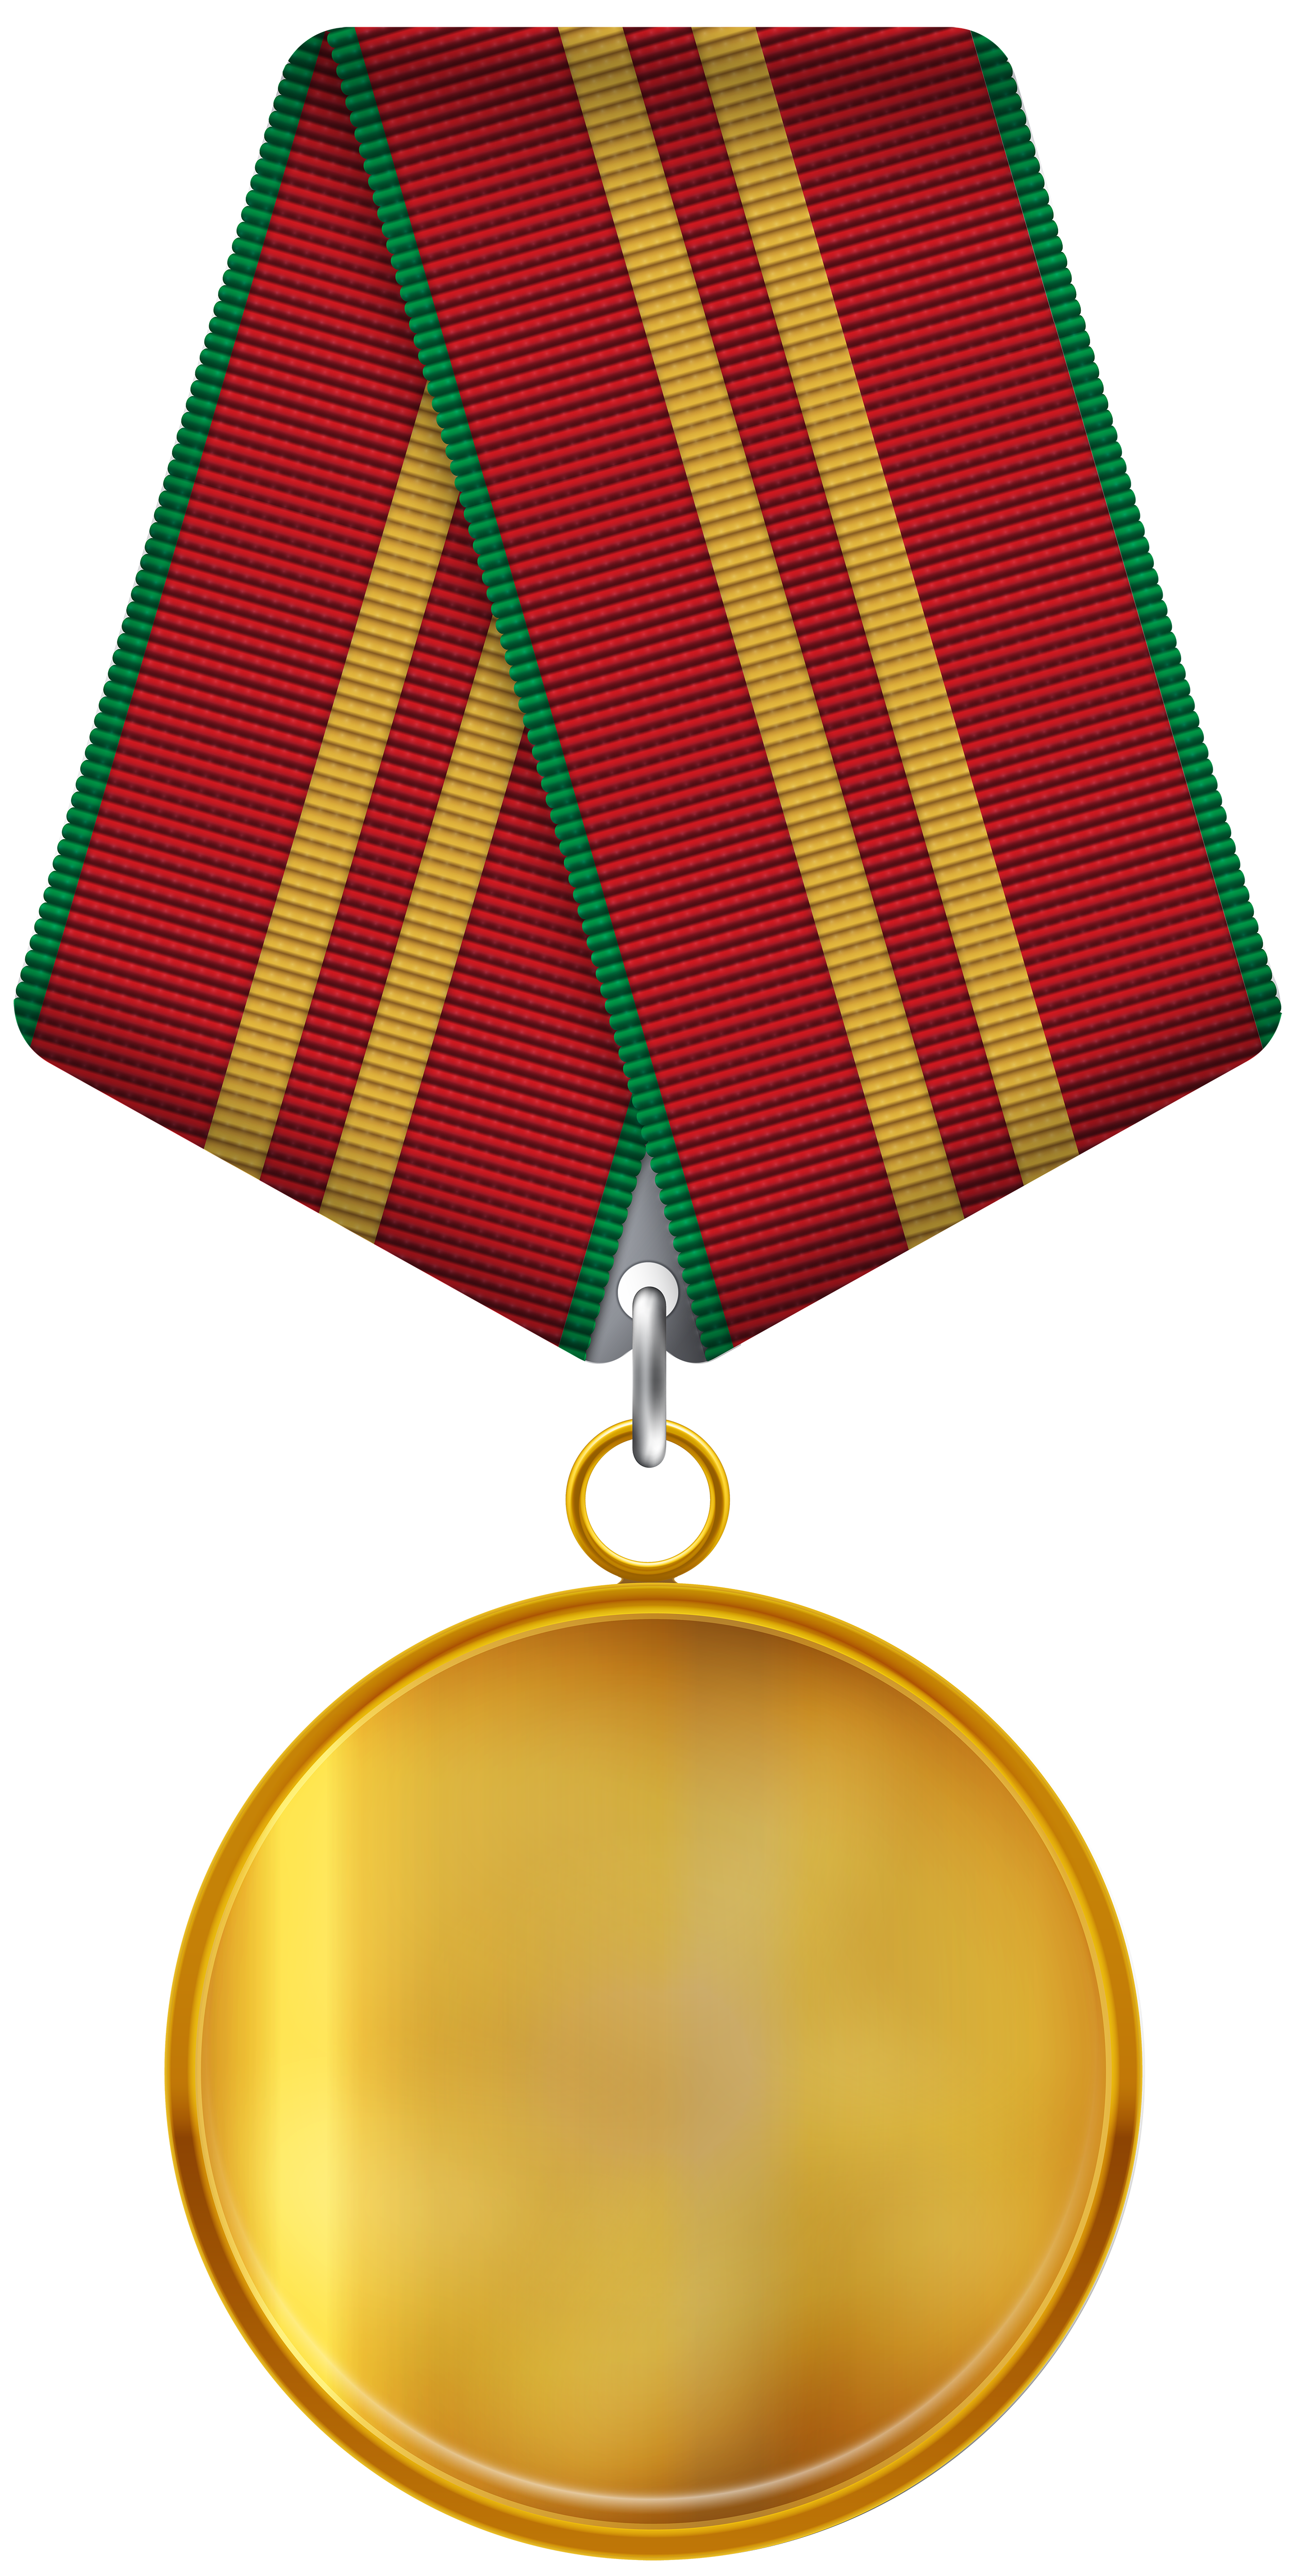 Medal PNG images Download 